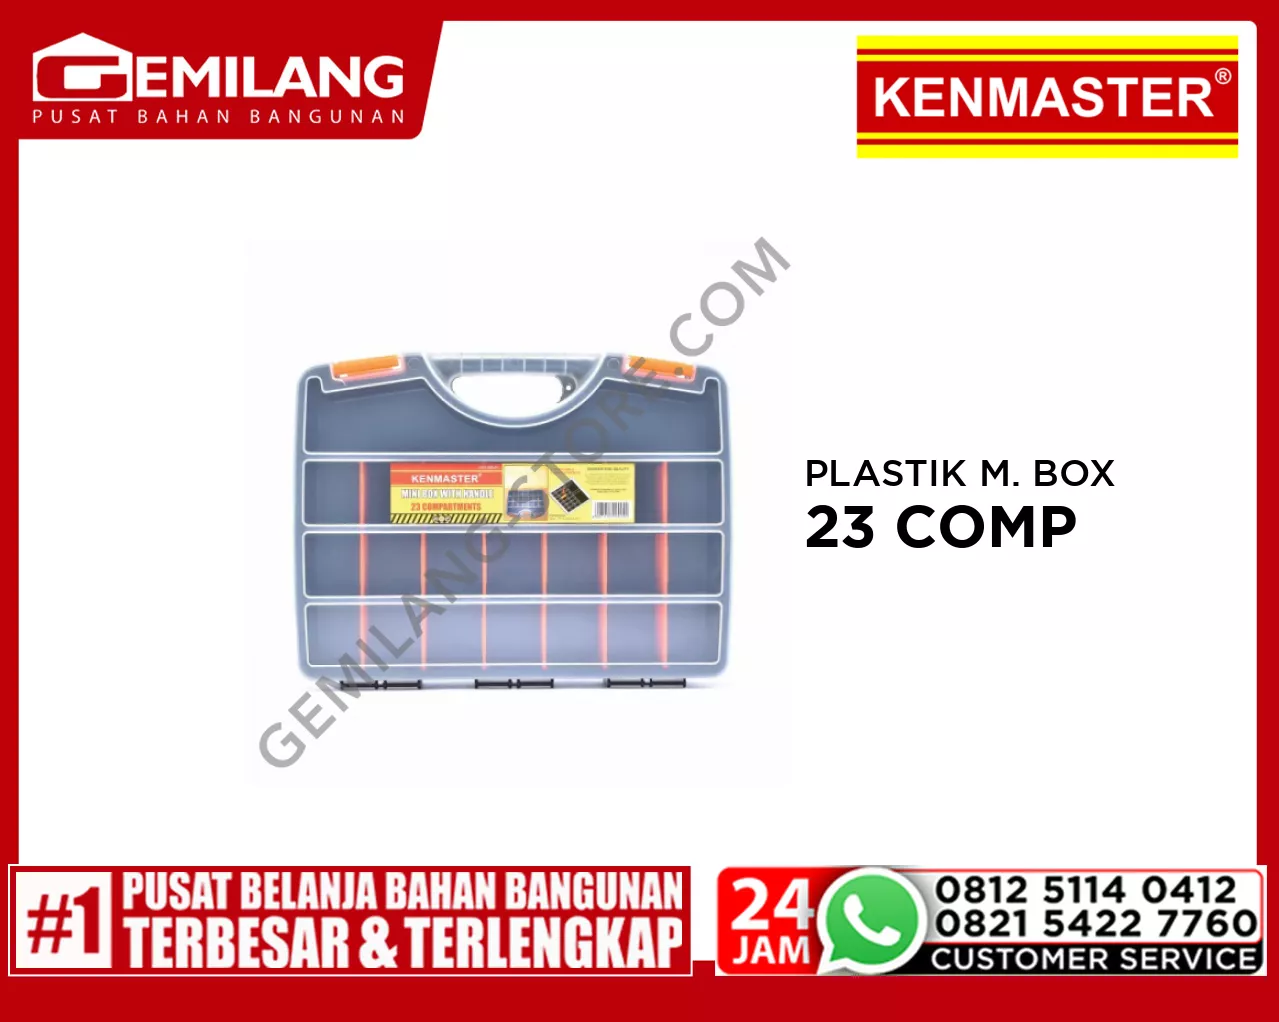 KENMASTER PLASTIK MINI BOX 23 COMP + HDL